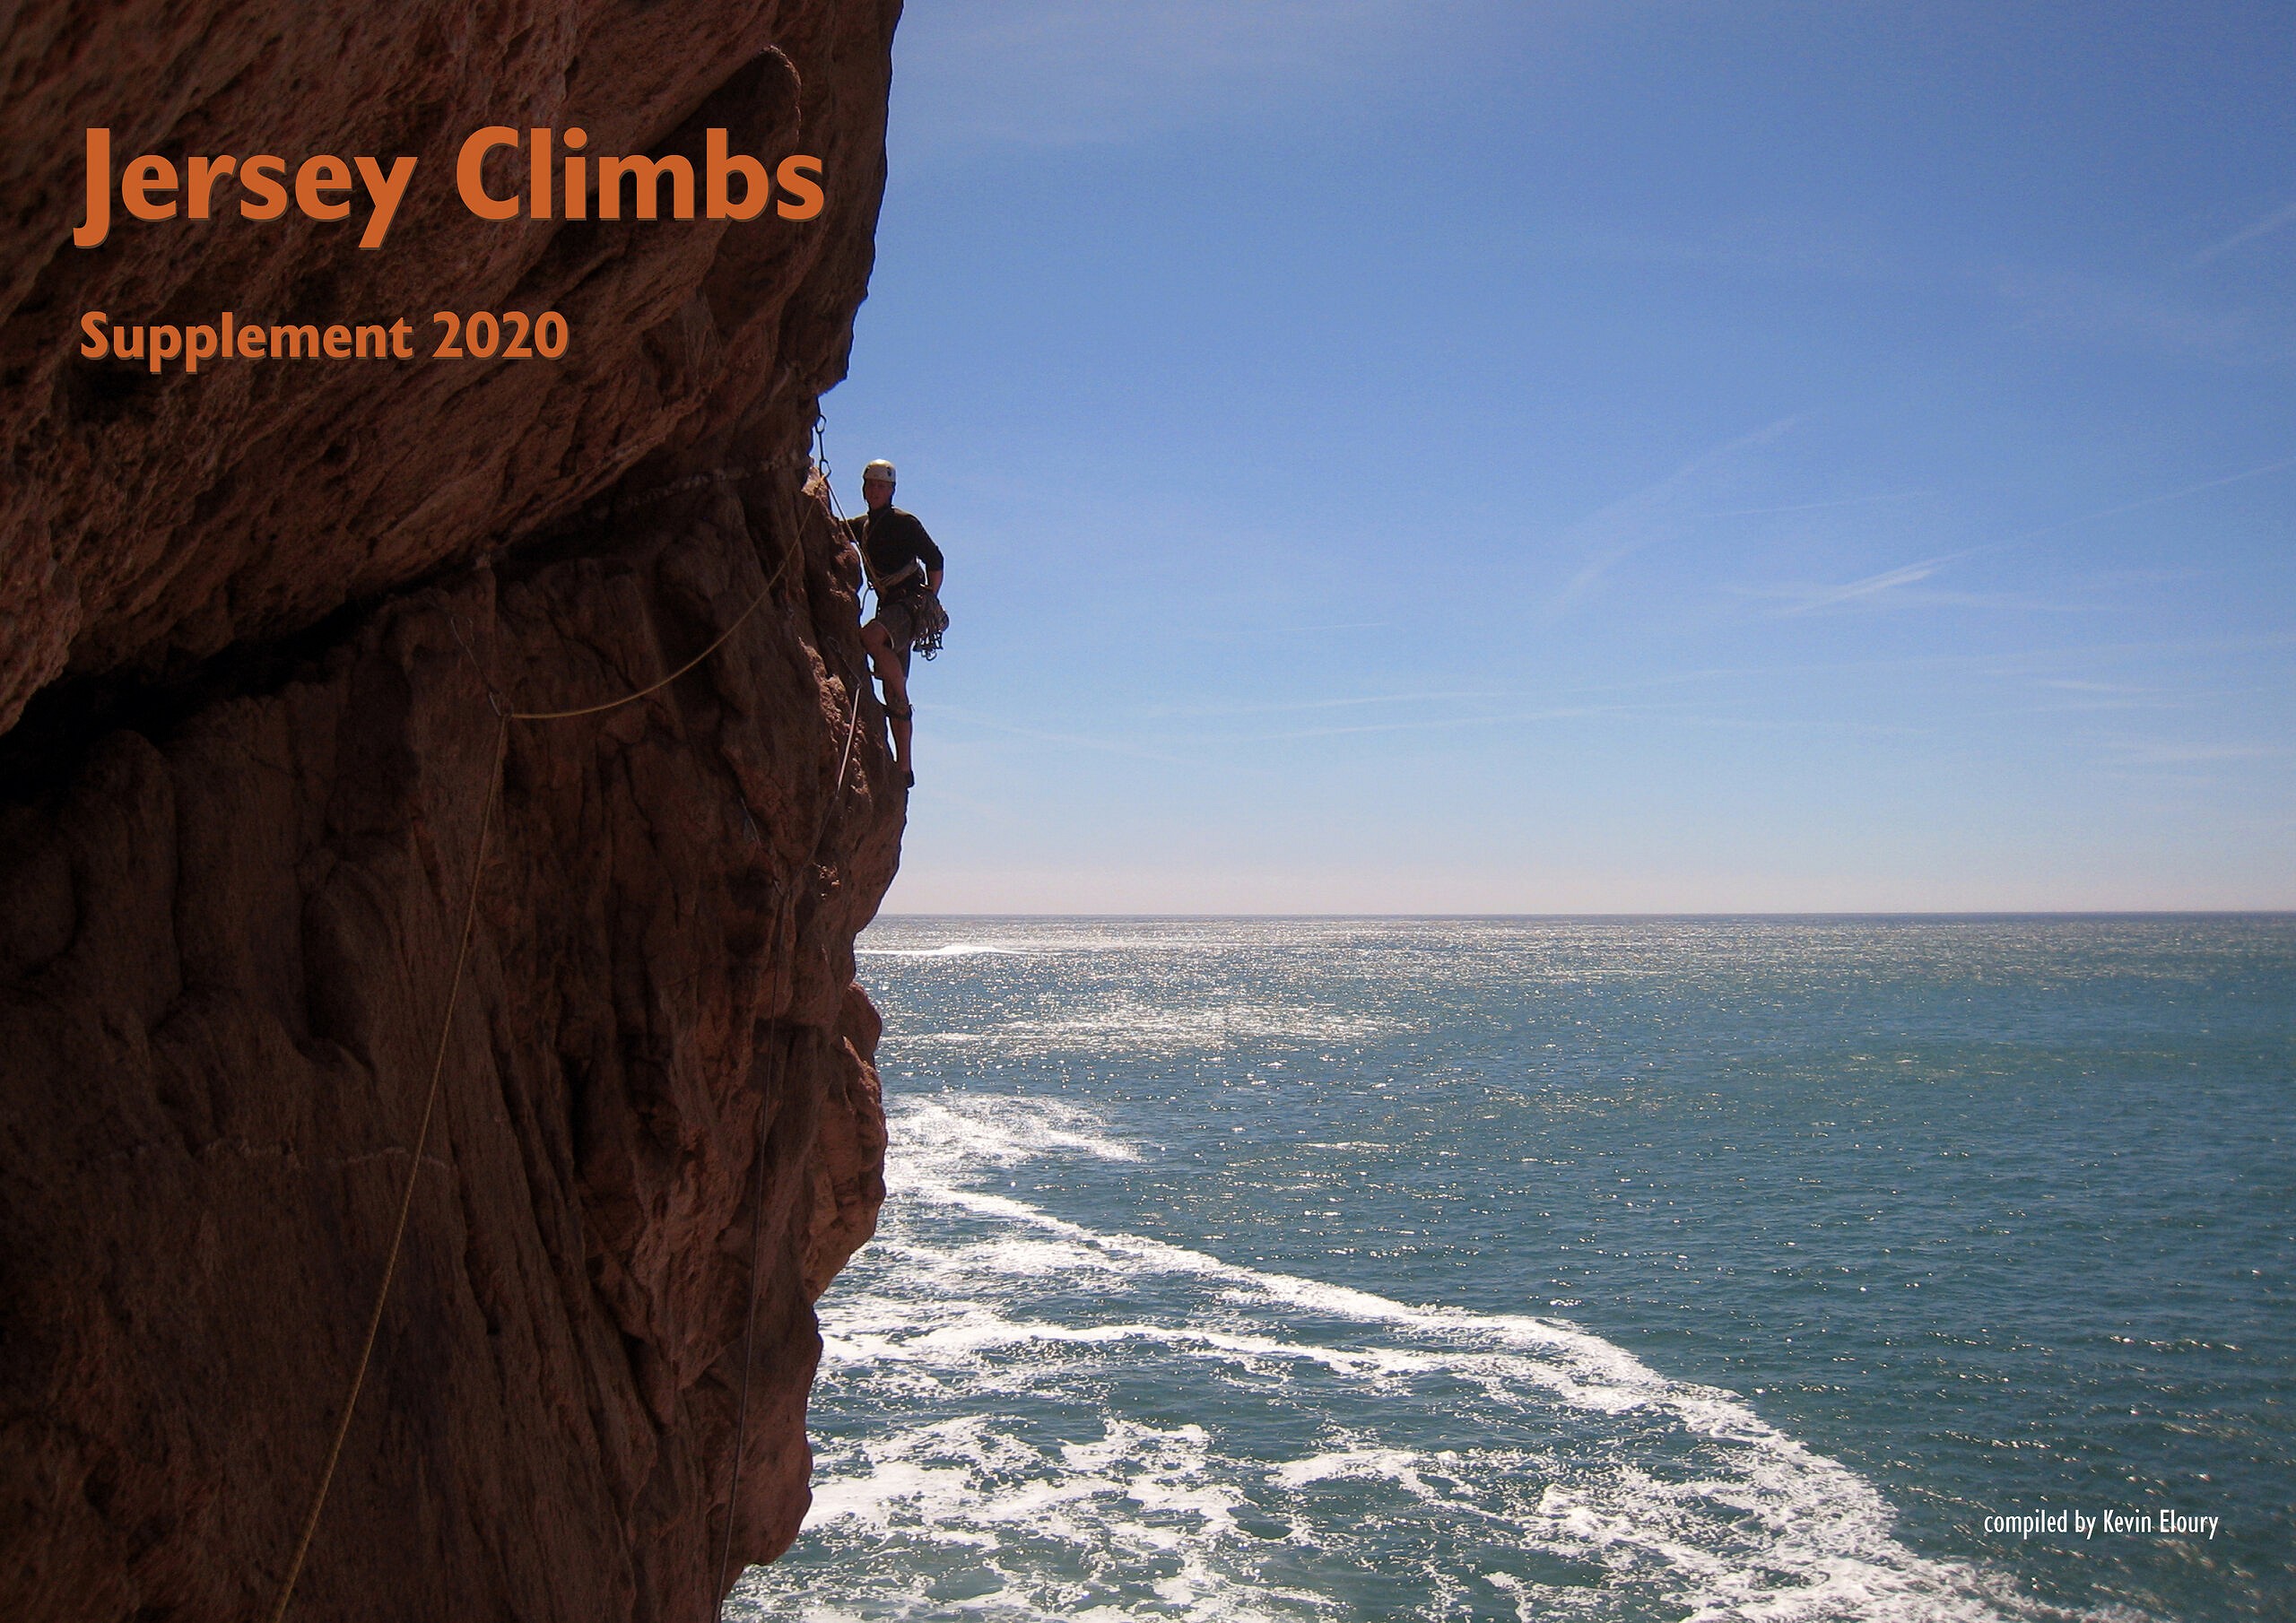 Jersey Climbs Supplement  © Kevin Eloury